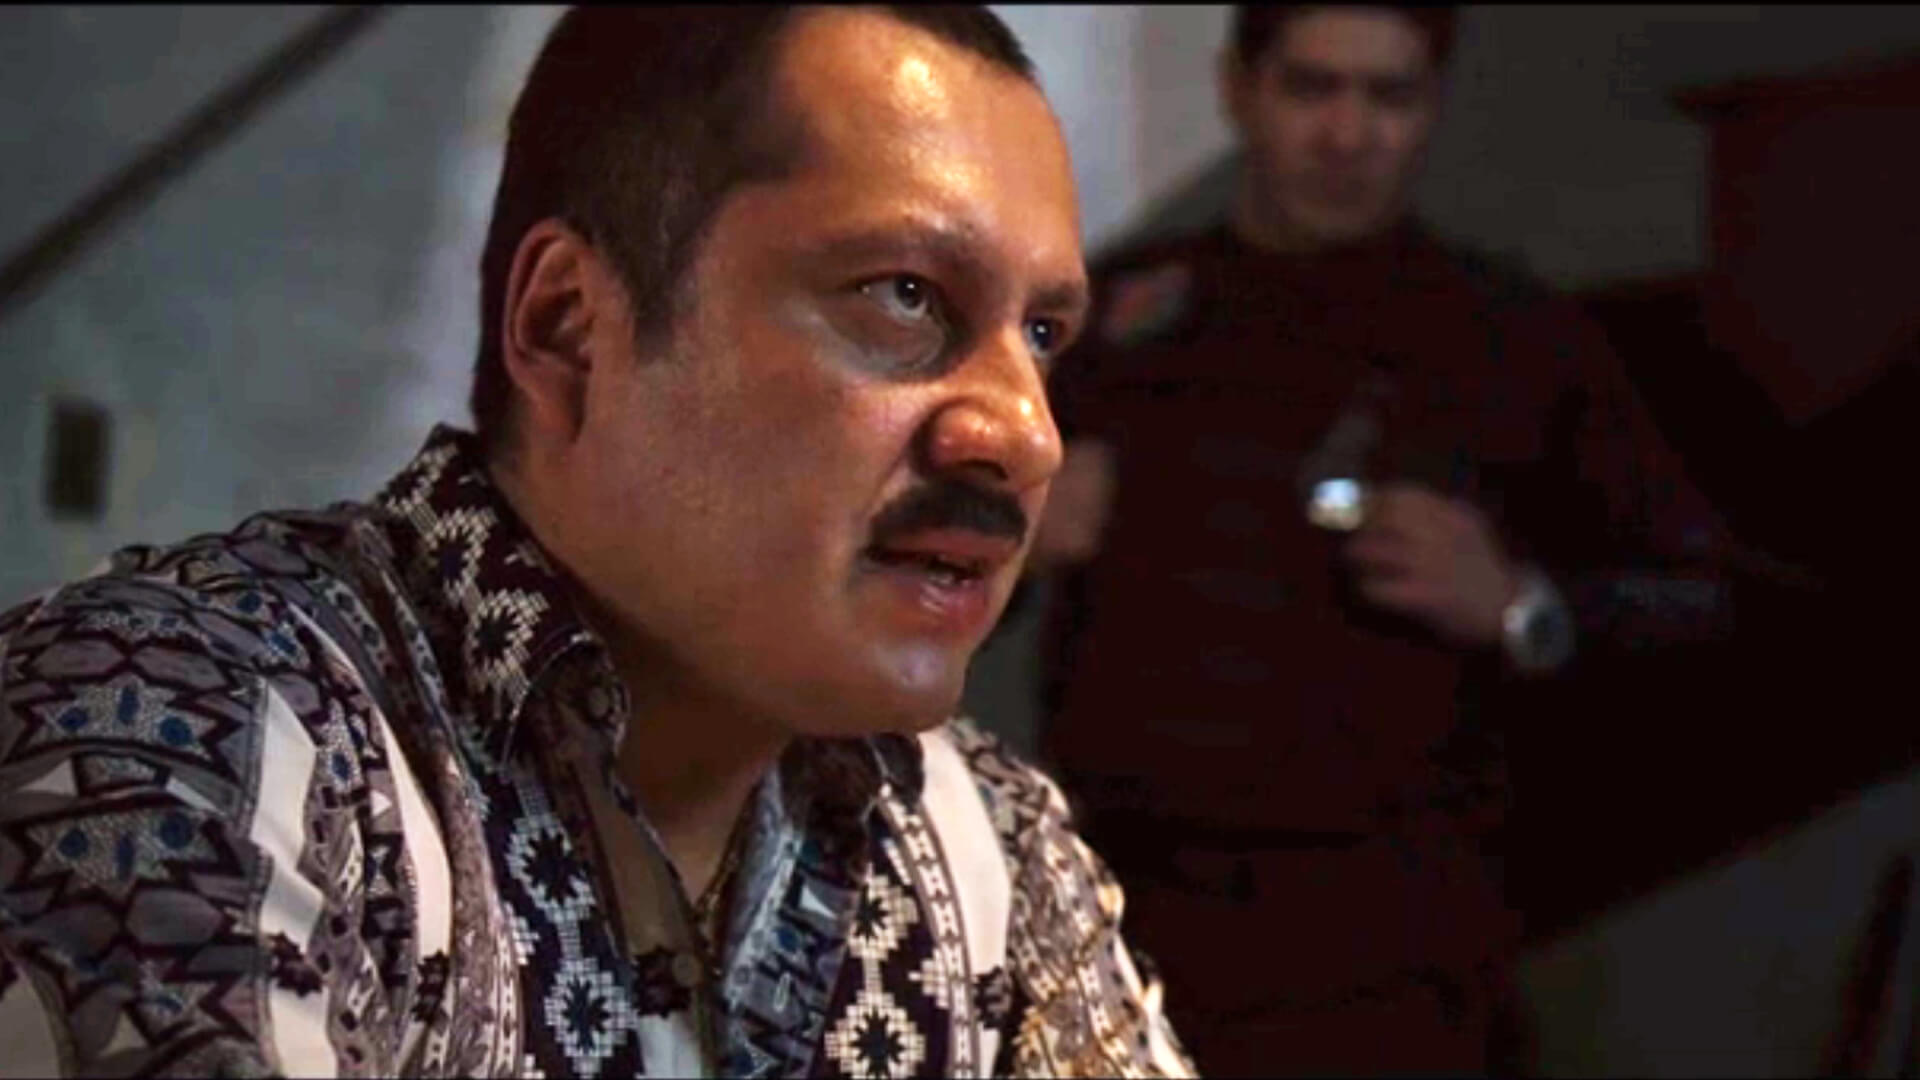 Quién es quién en El Chapo, serie que narra la historia del temido narco mexicano